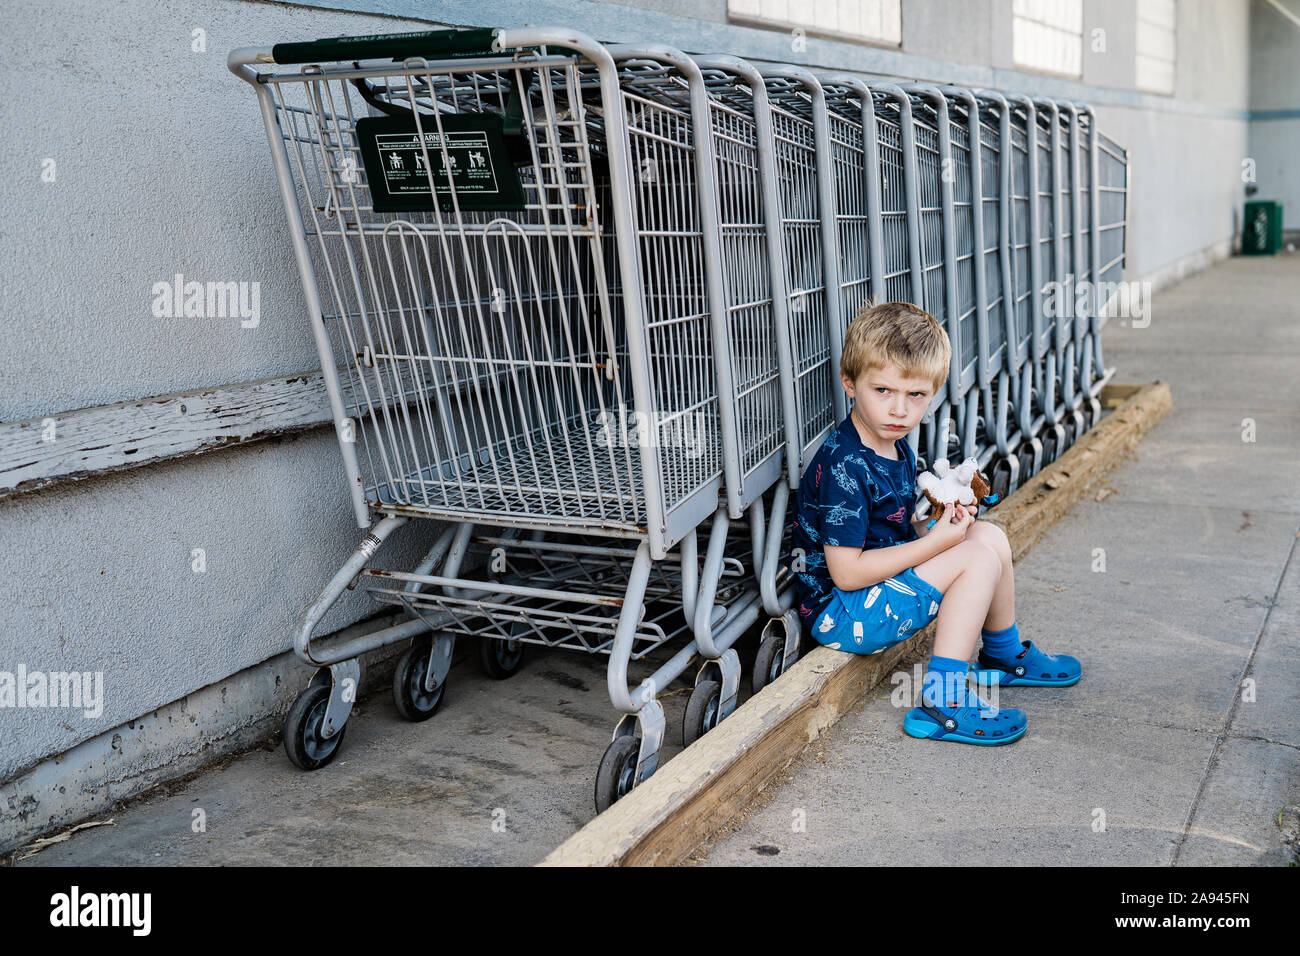 Ein kleiner Junge schmollt neben einer Reihe von Shopping Carts. Stockfoto